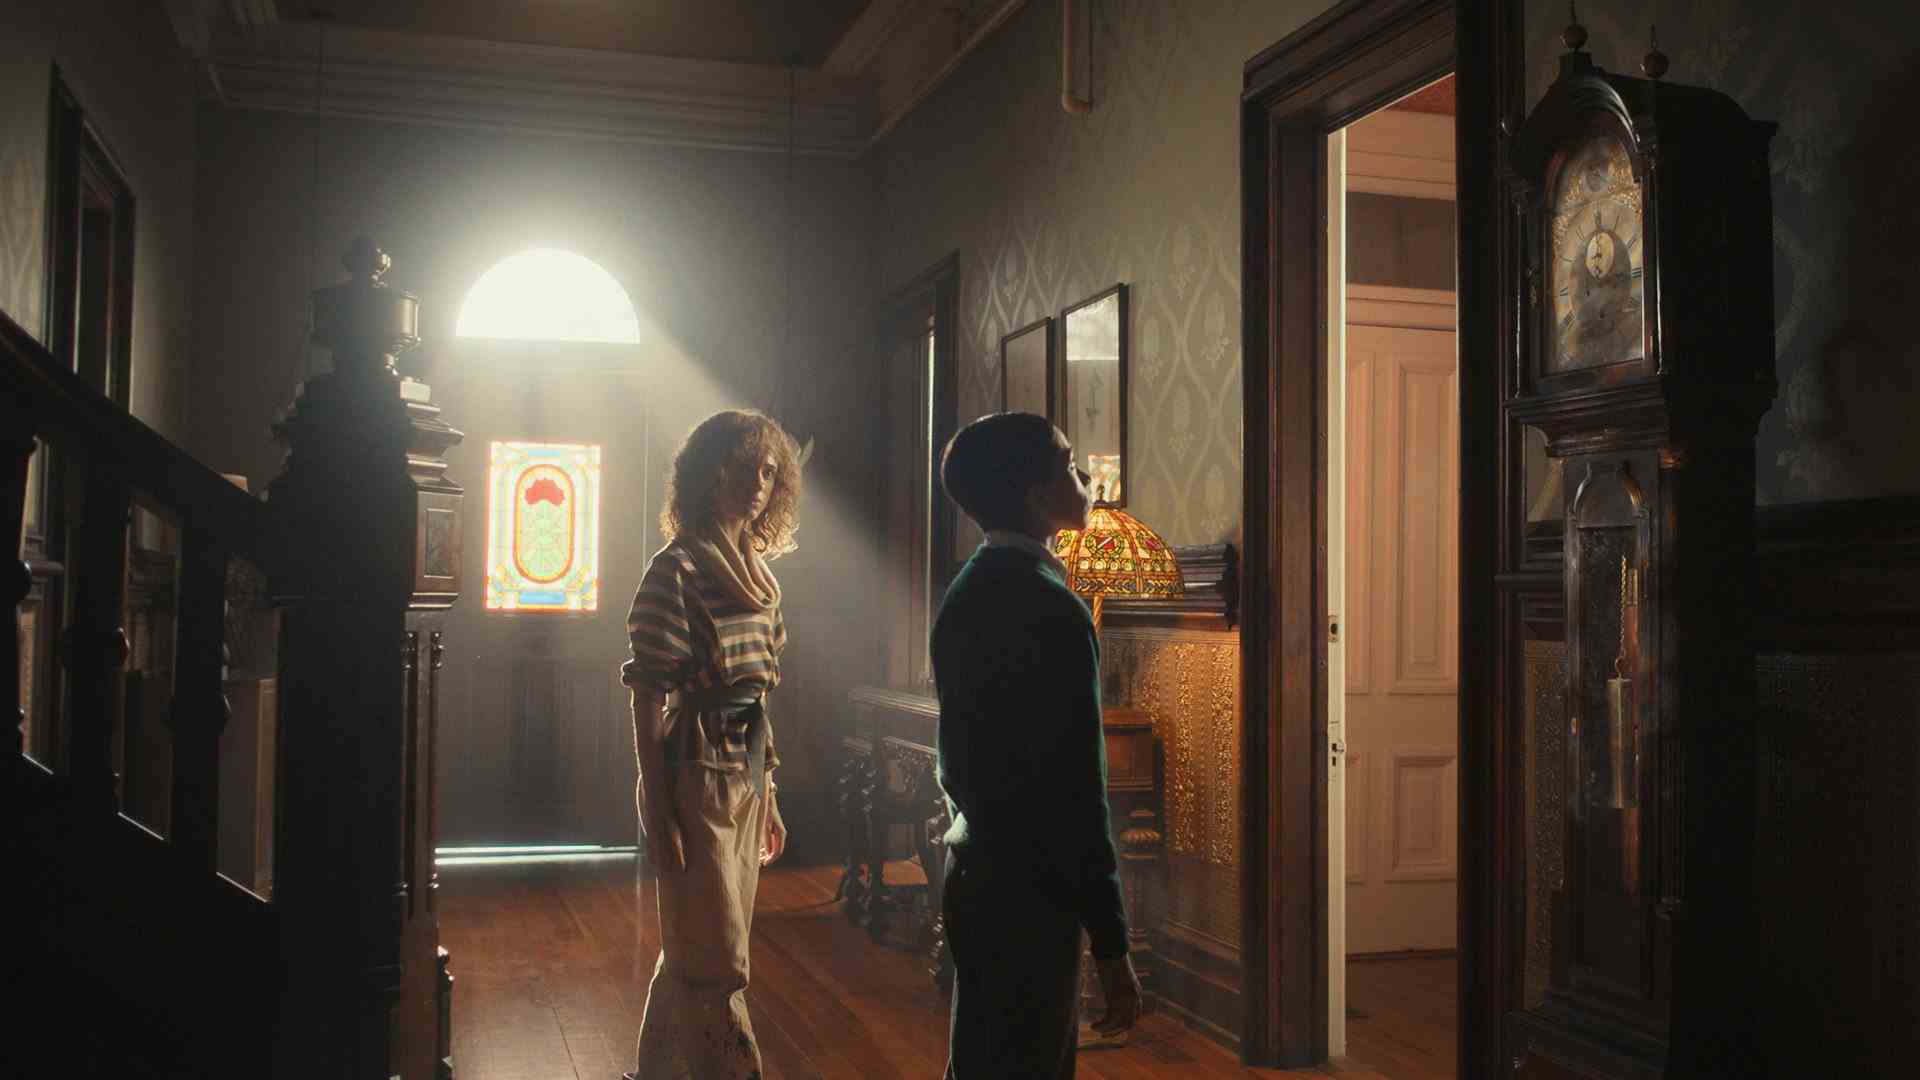 Dans le hall d'une vieille maison, un garçon regarde une horloge grand-père tandis qu'une femme se tient debout et le regarde.